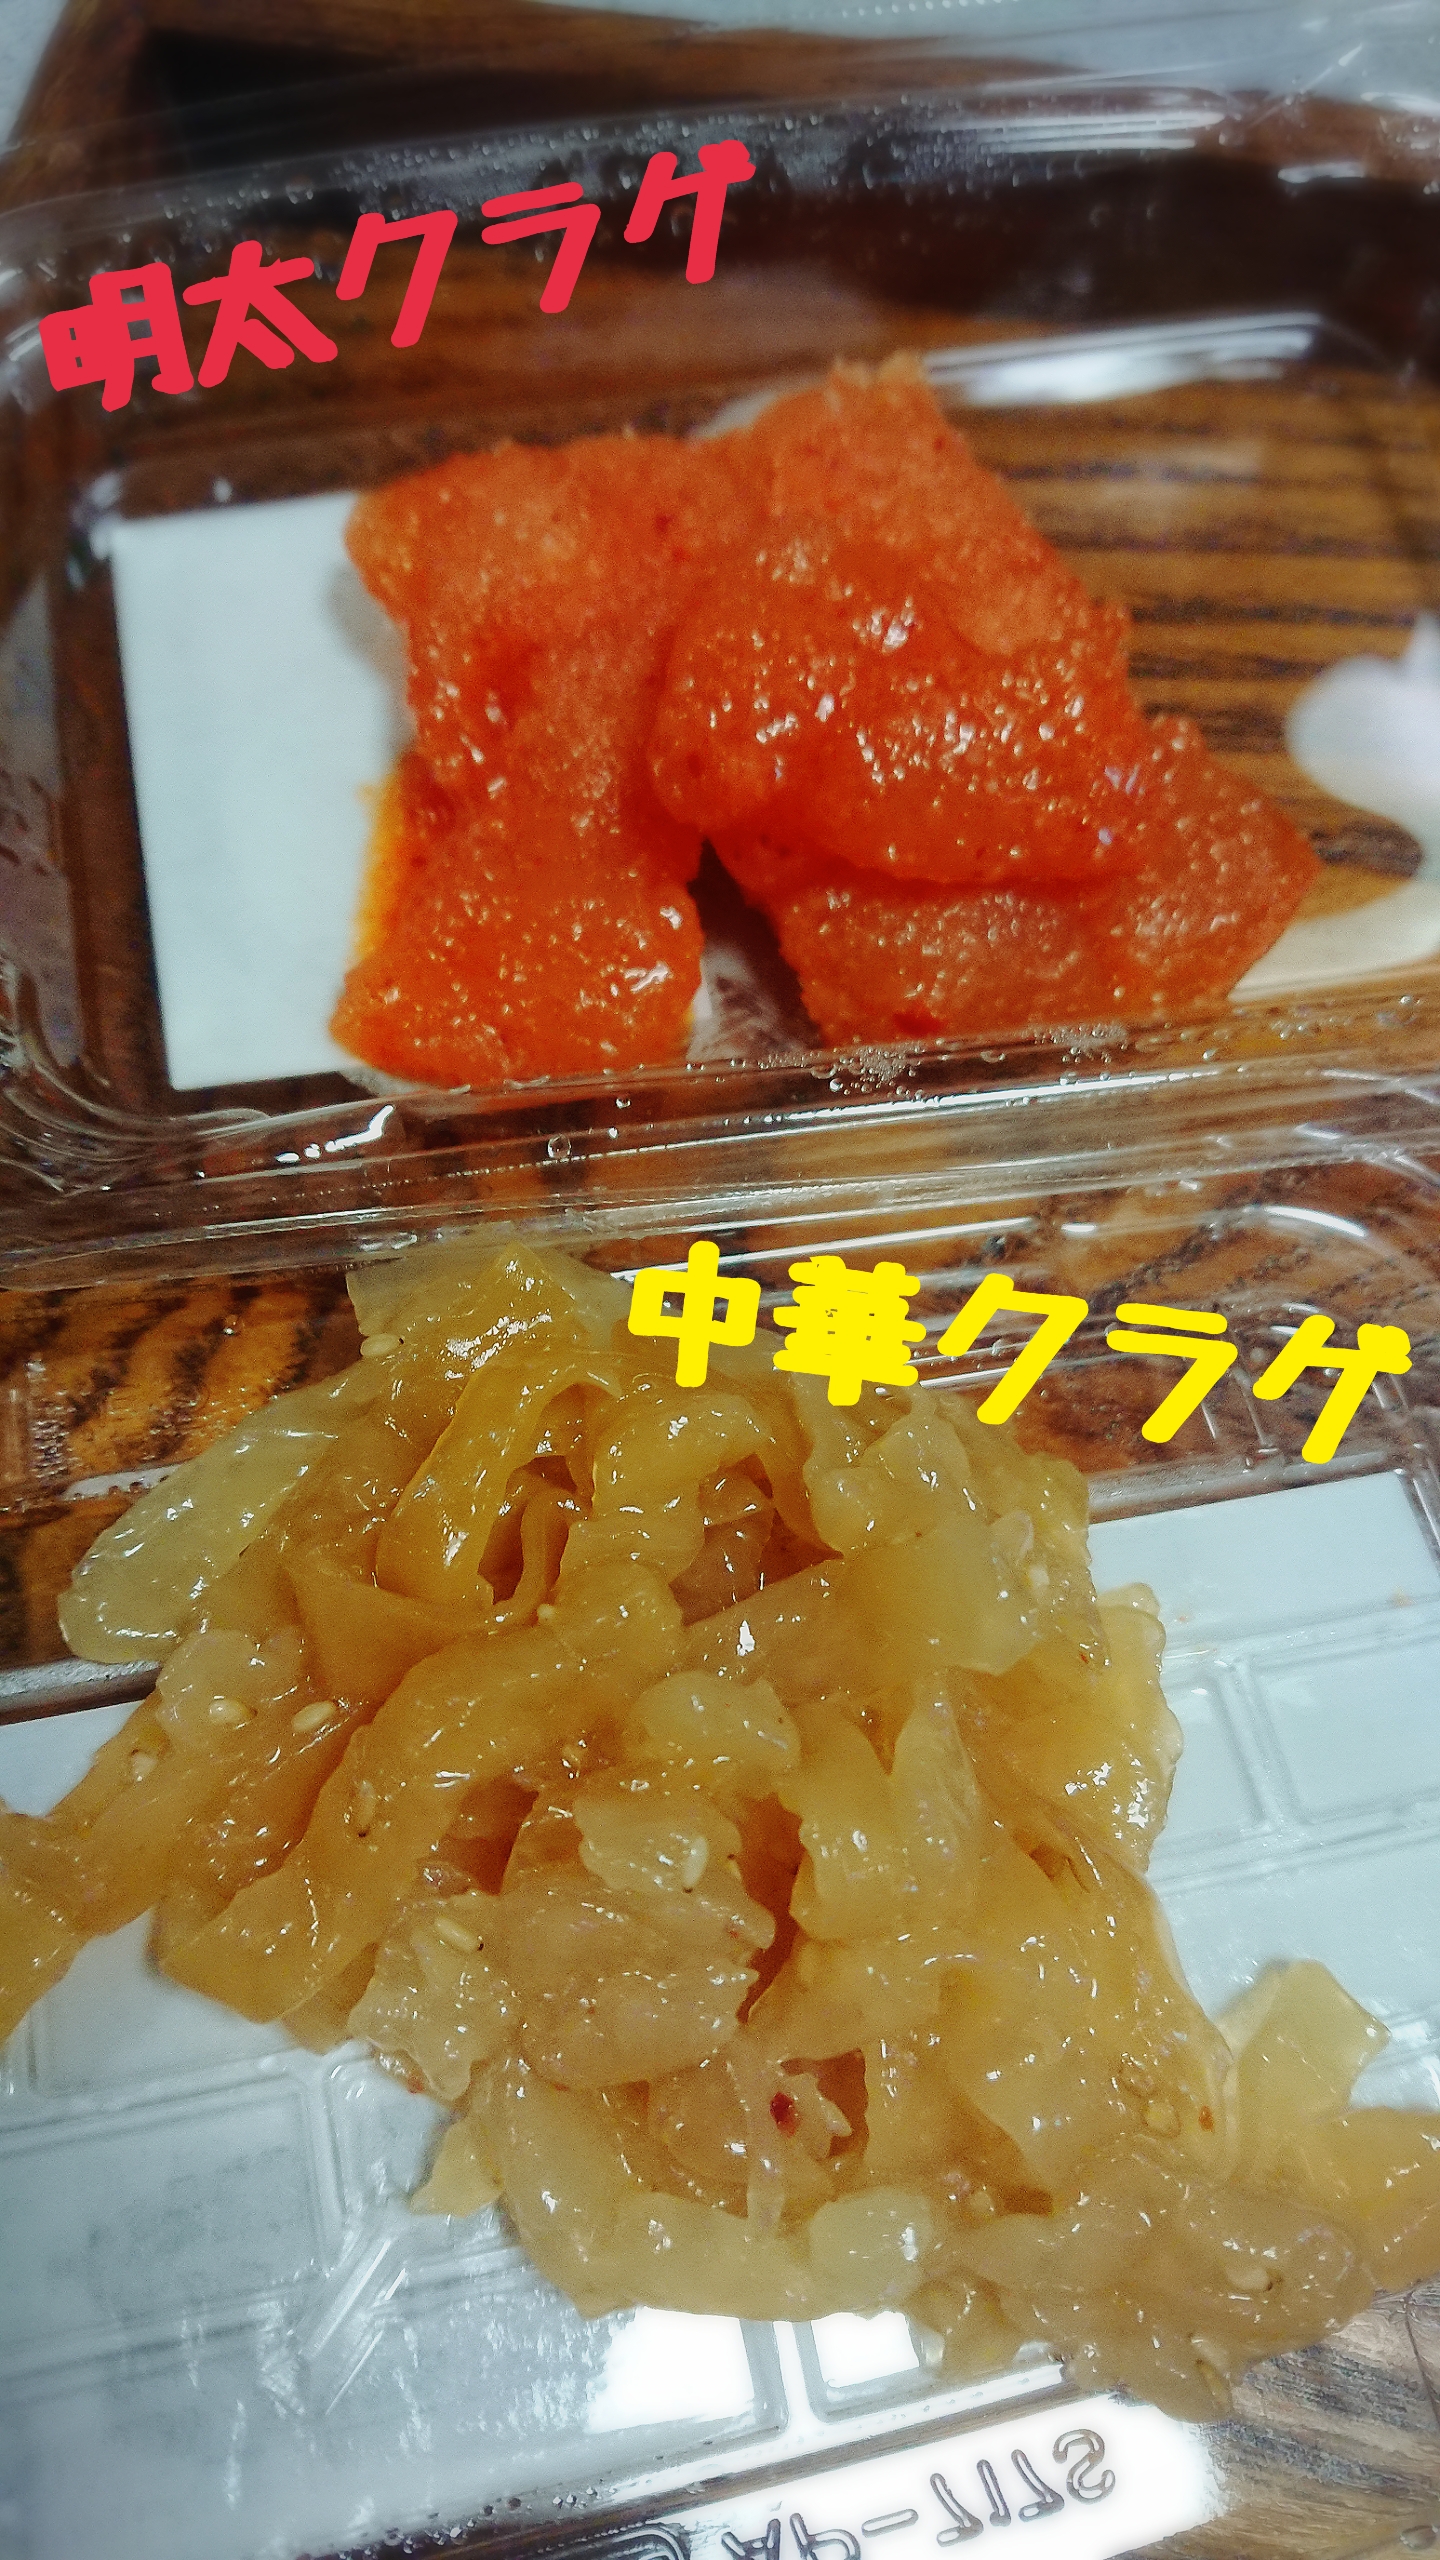 クラゲ加工食品が神戸セレクションを受賞 谷五郎の笑って暮らそう ラジオ関西 Jocr 558khz